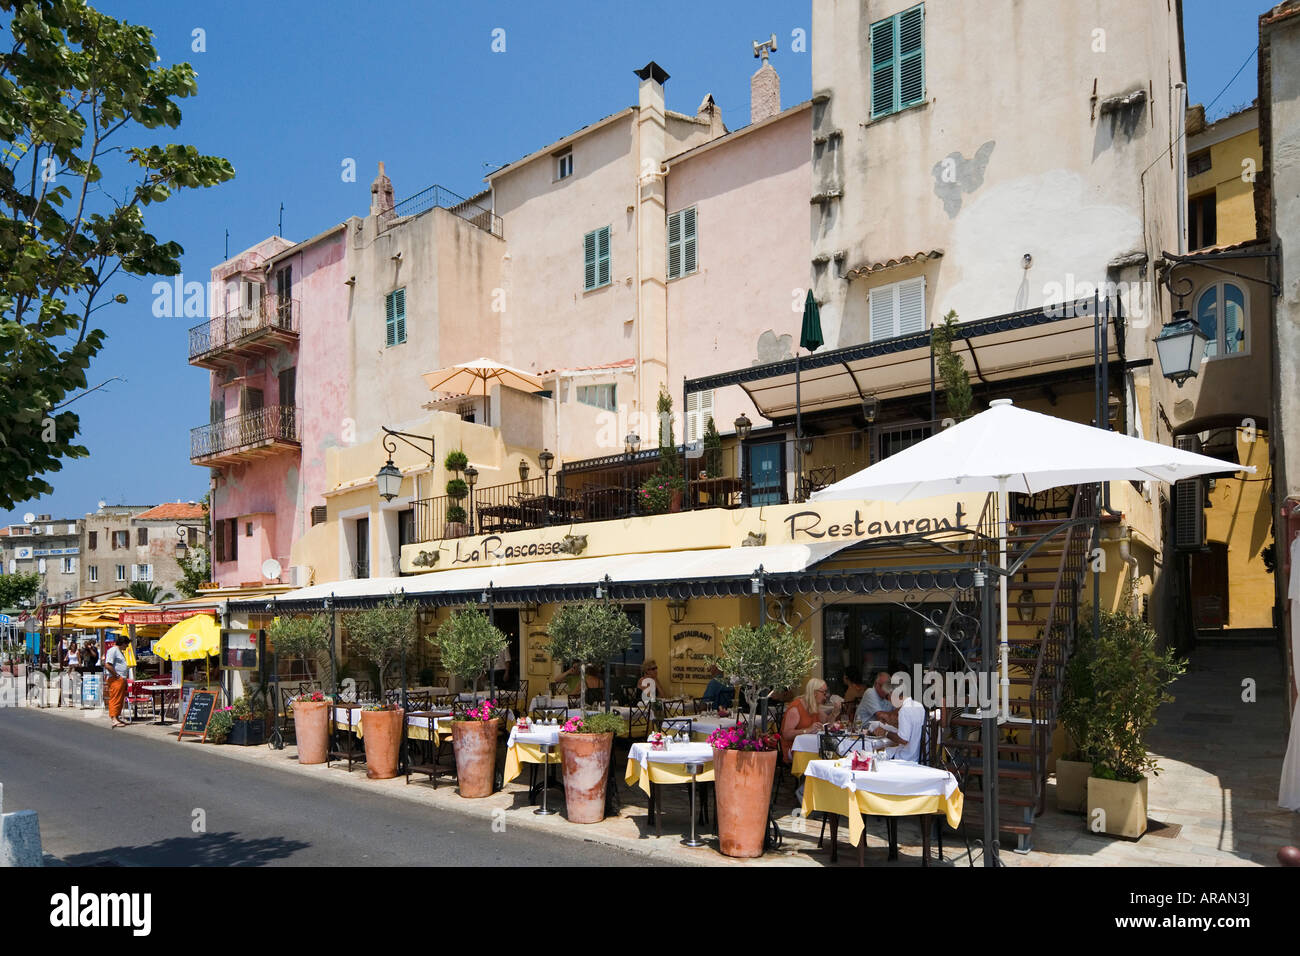 Harboufront restaurant, Place des Portes, St Florent, The Nebbio, Corsica, France Stock Photo